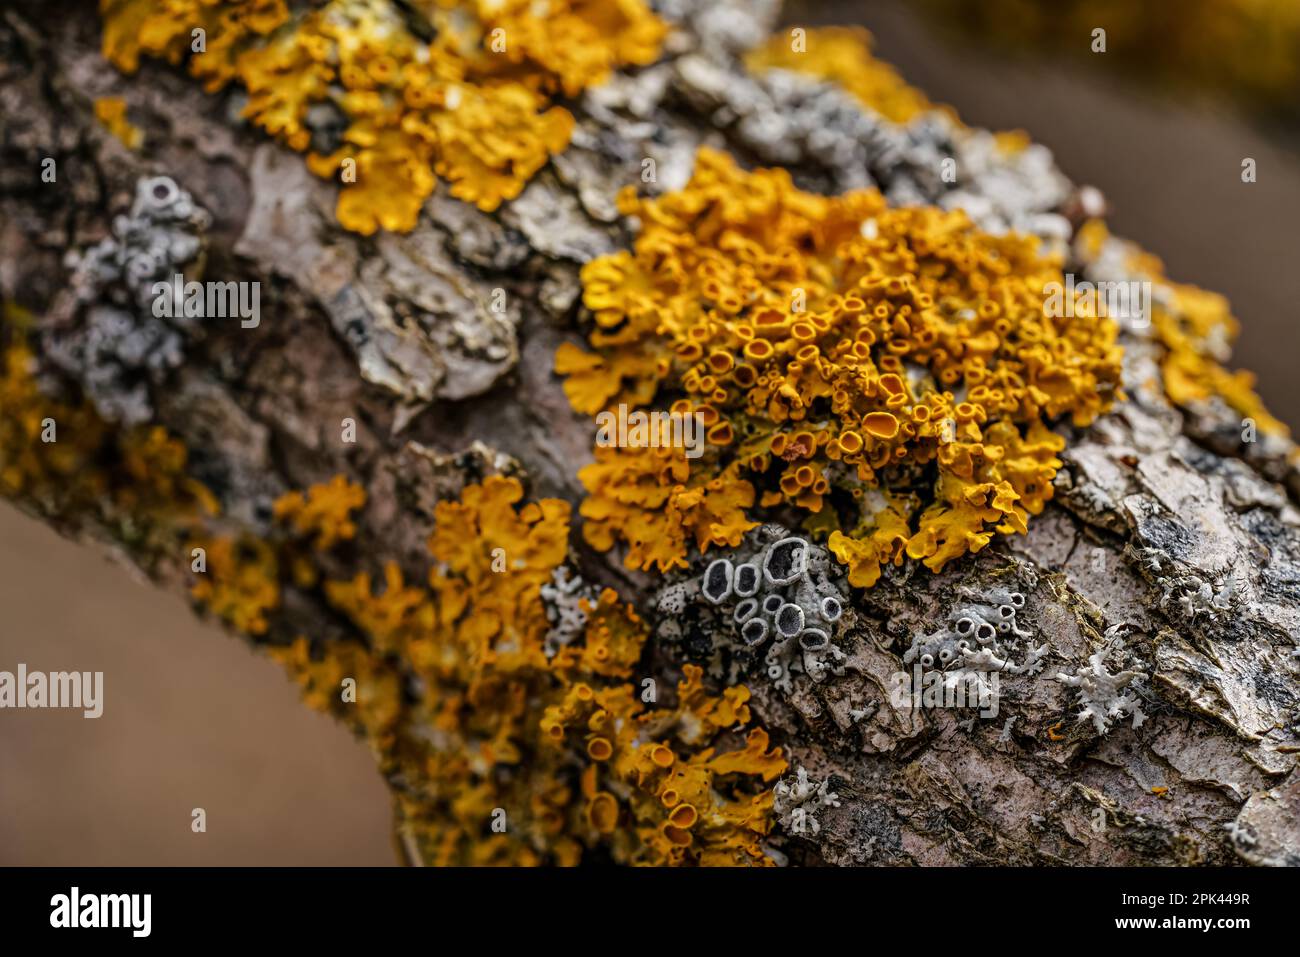 Lichen jaune orangé maritime - Xanthoria parietina et quelques physodes Hypogymnia - croissant sur branche d'arbre sèche, détail de gros plan Banque D'Images